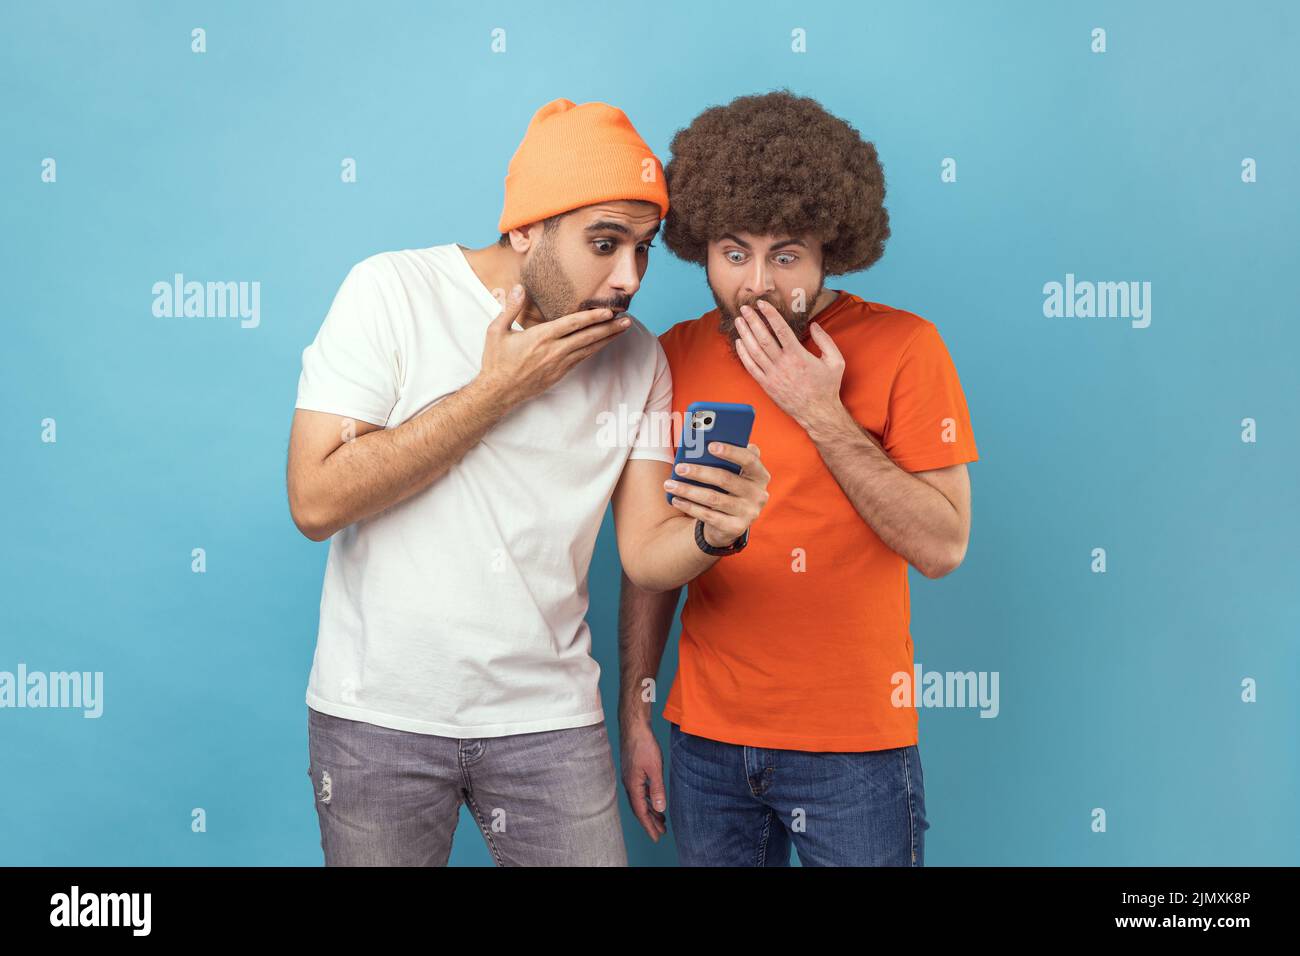 Porträt von zwei attraktiven schockierten jungen erwachsenen Hipster-Männern, die mit dem Smartphone stehen, in sozialen Netzwerken aktuelle Nachrichten lesen und dabei offenen Mund decken. Innenaufnahme des Studios isoliert auf blauem Hintergrund. Stockfoto